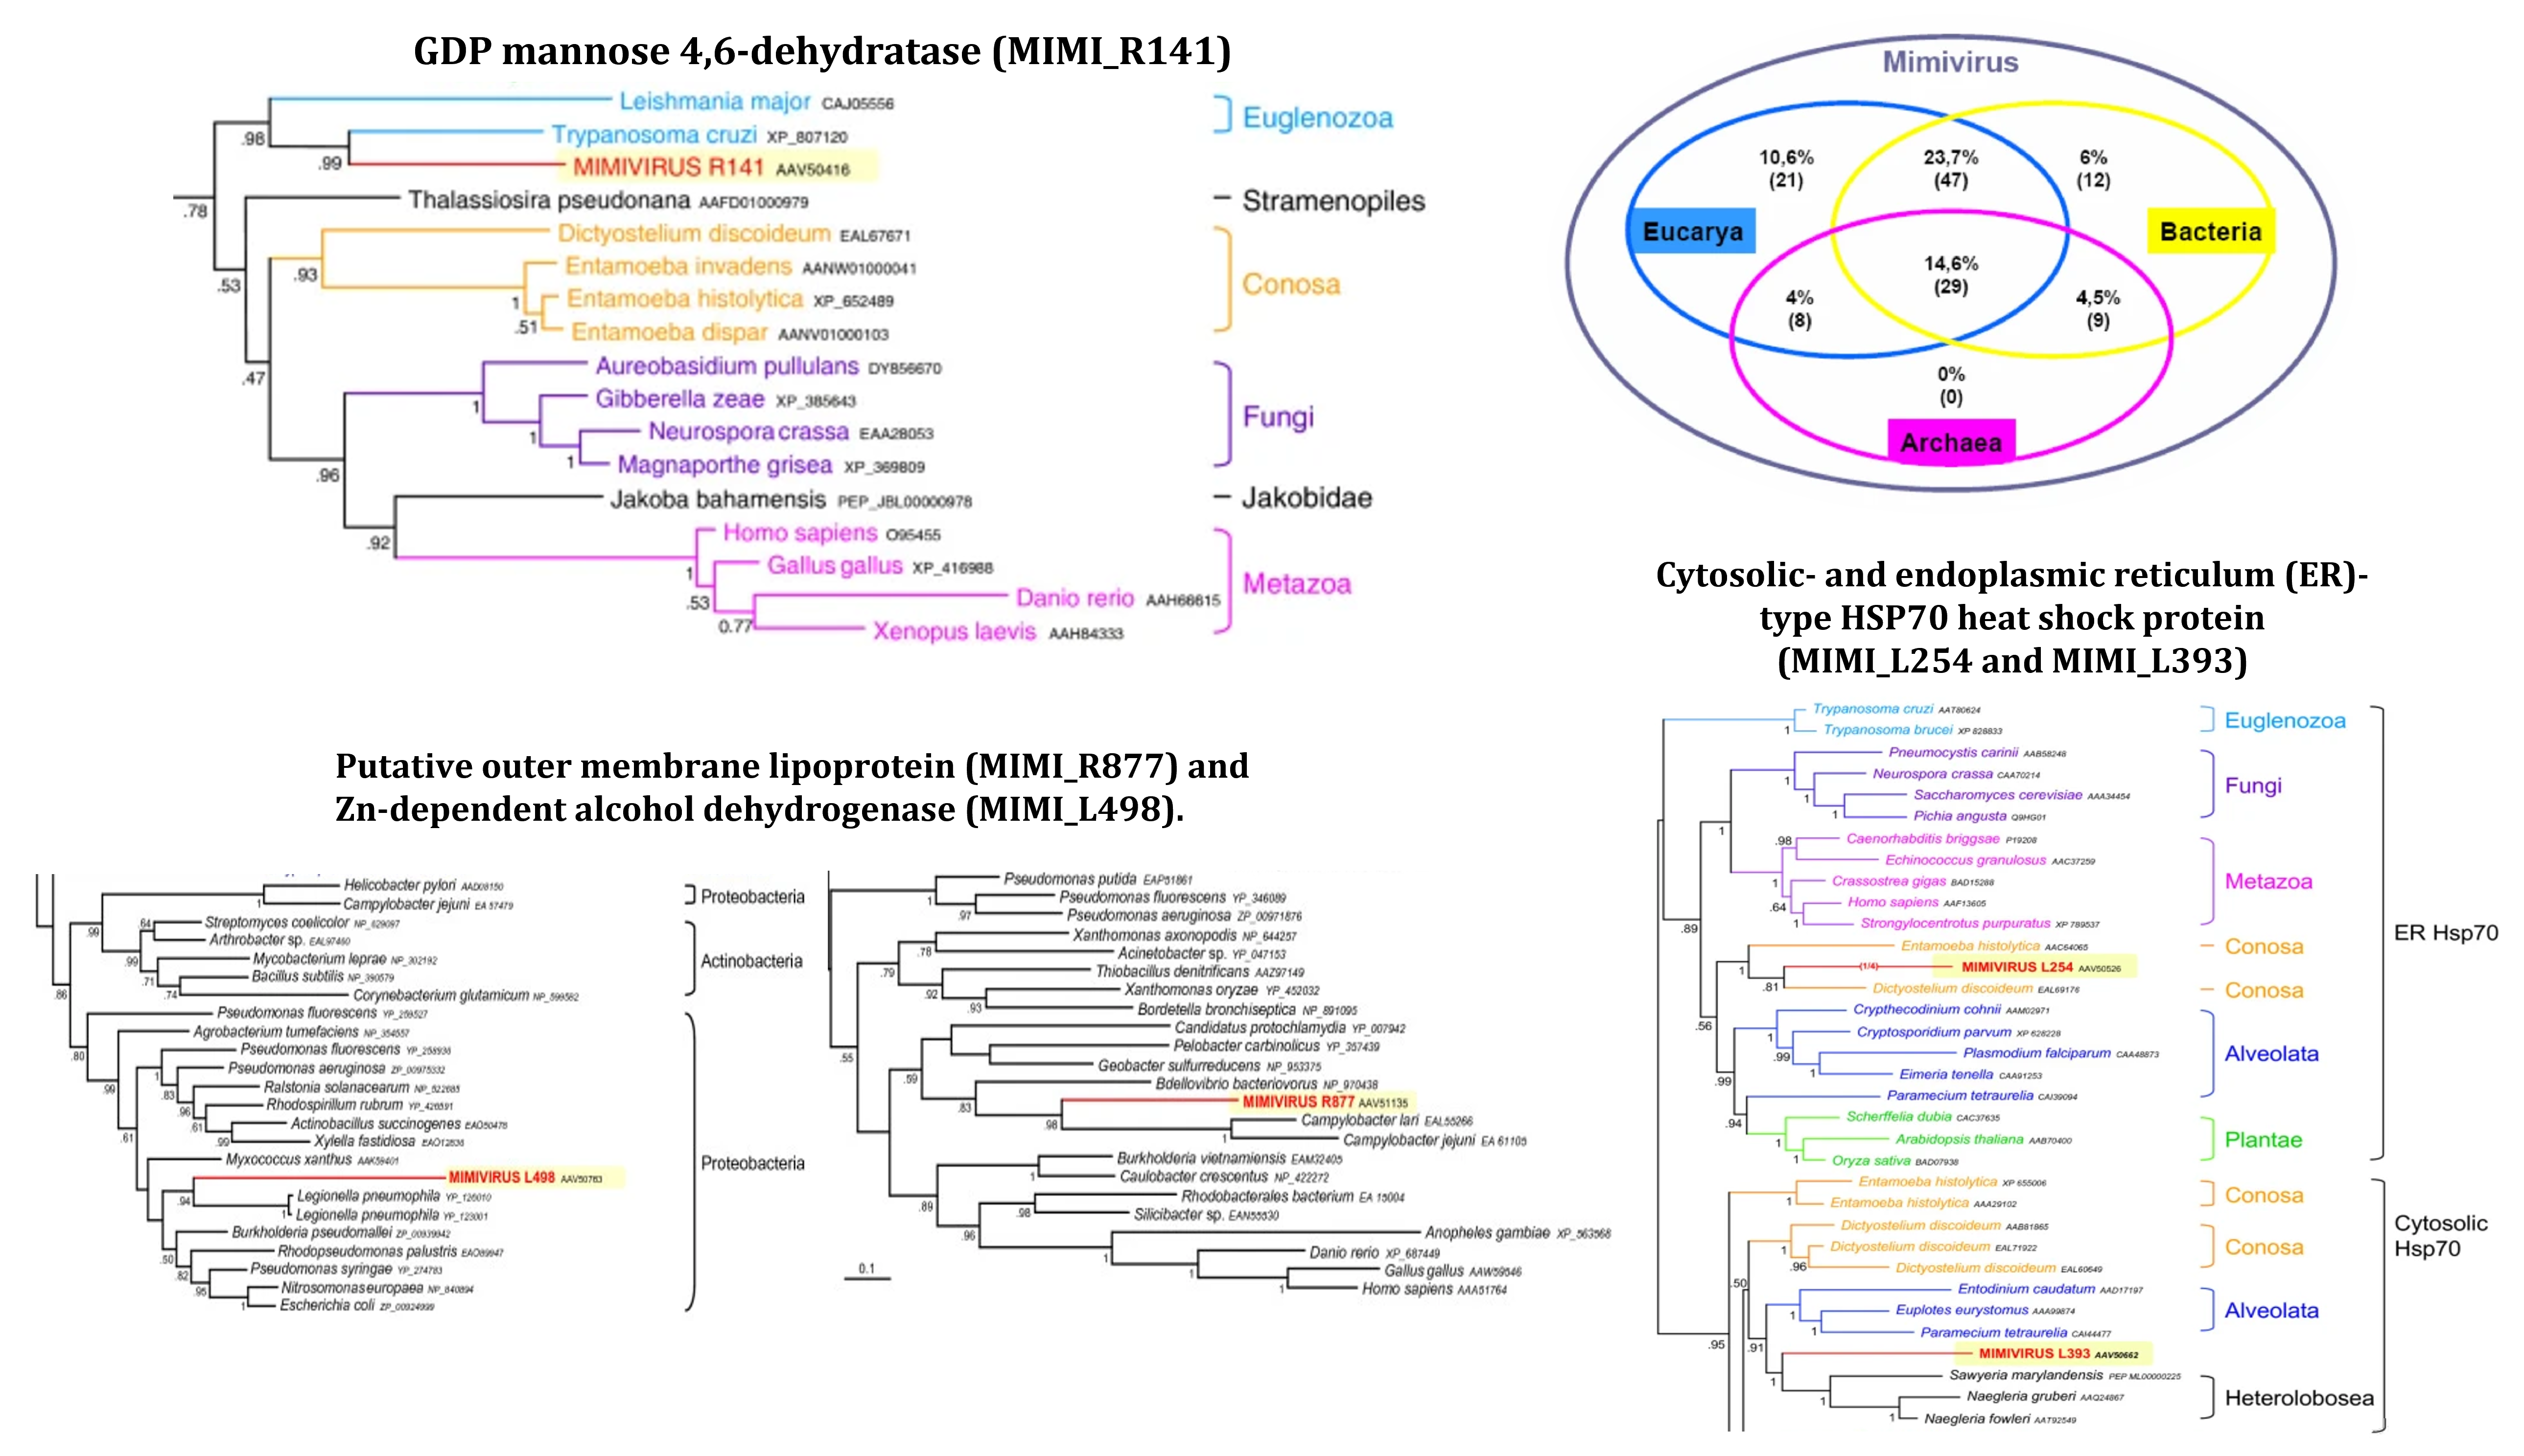 Empleando 5 genes de Mimivirus (resaltados en amarillos), rastreando la evolución génica de cada gen, los genes más cercanos presentan historias tan dispares como MIMI_R141, de origen euglenozoo; el gen MIMI_R877 y MIMI_L498 derivado de los protozooarios Conosa; finalmente los genes MIMI_L254 y MIMI_L393 con origen bacteriano. Como ejemplos, la gran parte de los genes de Mimivirus se distribuyen entre los eucariotas y bacterias, o al lianaje previo a la diversificación entre estos, es decir comunes a LUCA. Sin embargo, este método está restringido a genes con homología. Tomado y modificado de @moreira2008giant